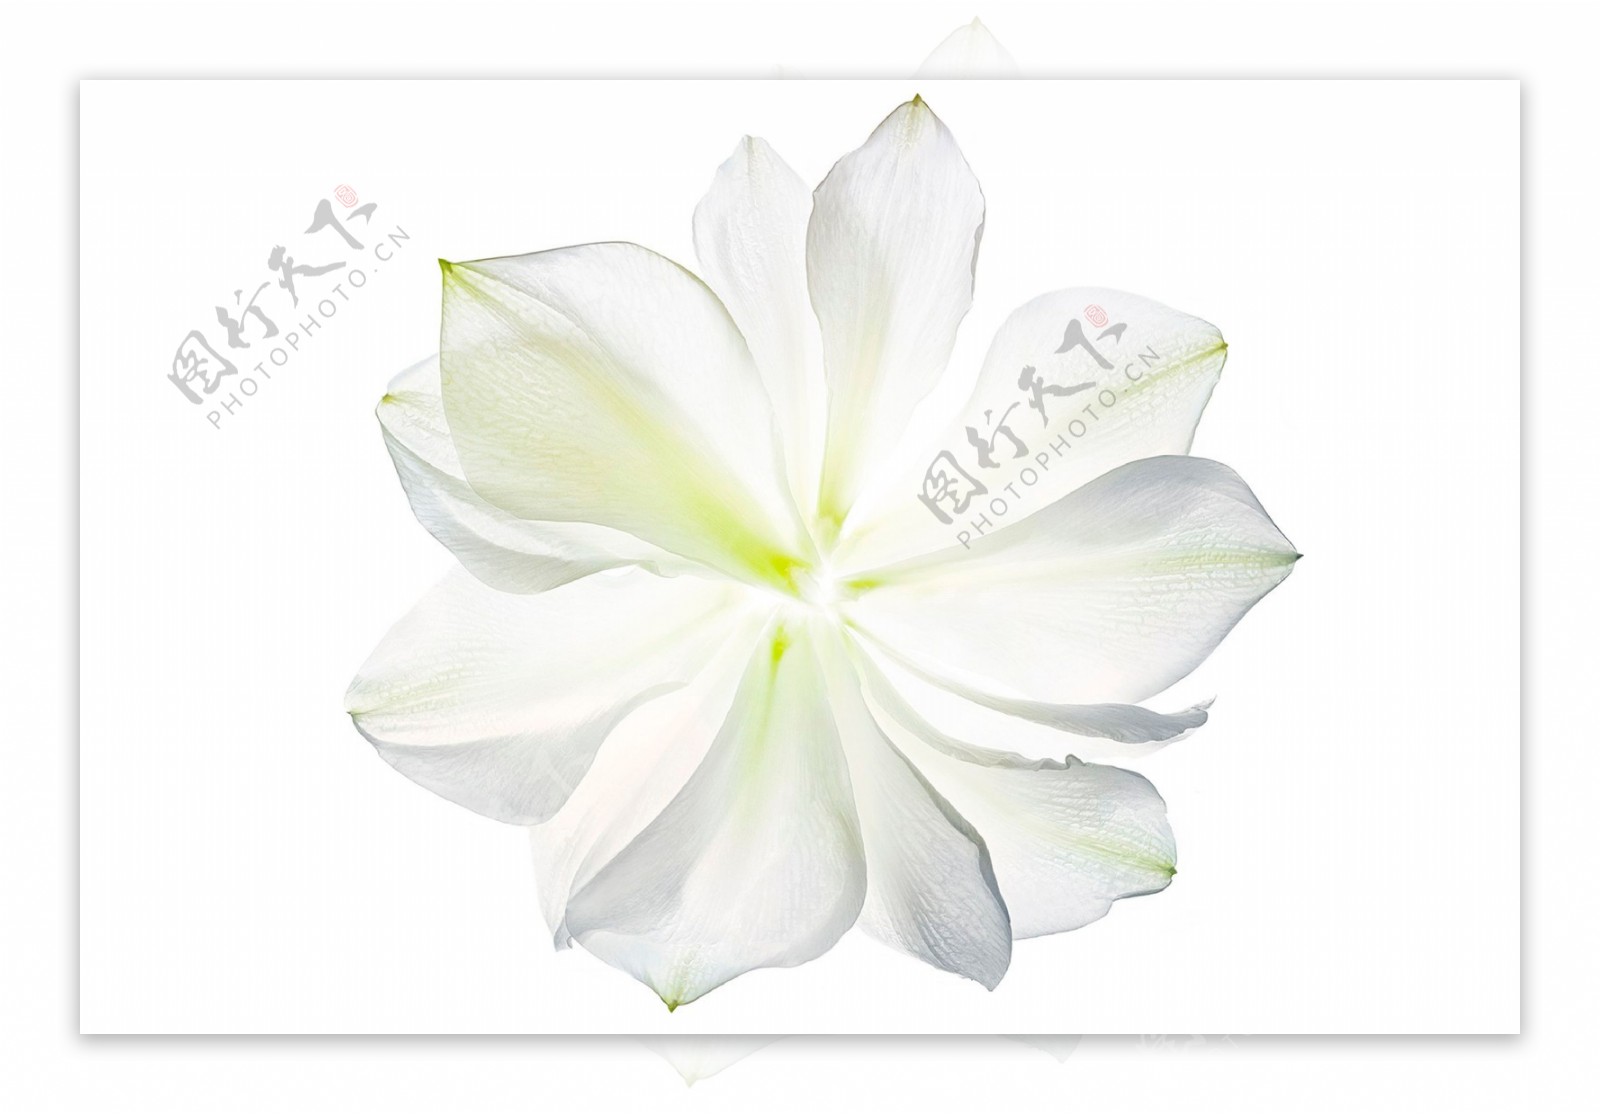 高雅白色花卉透明素材